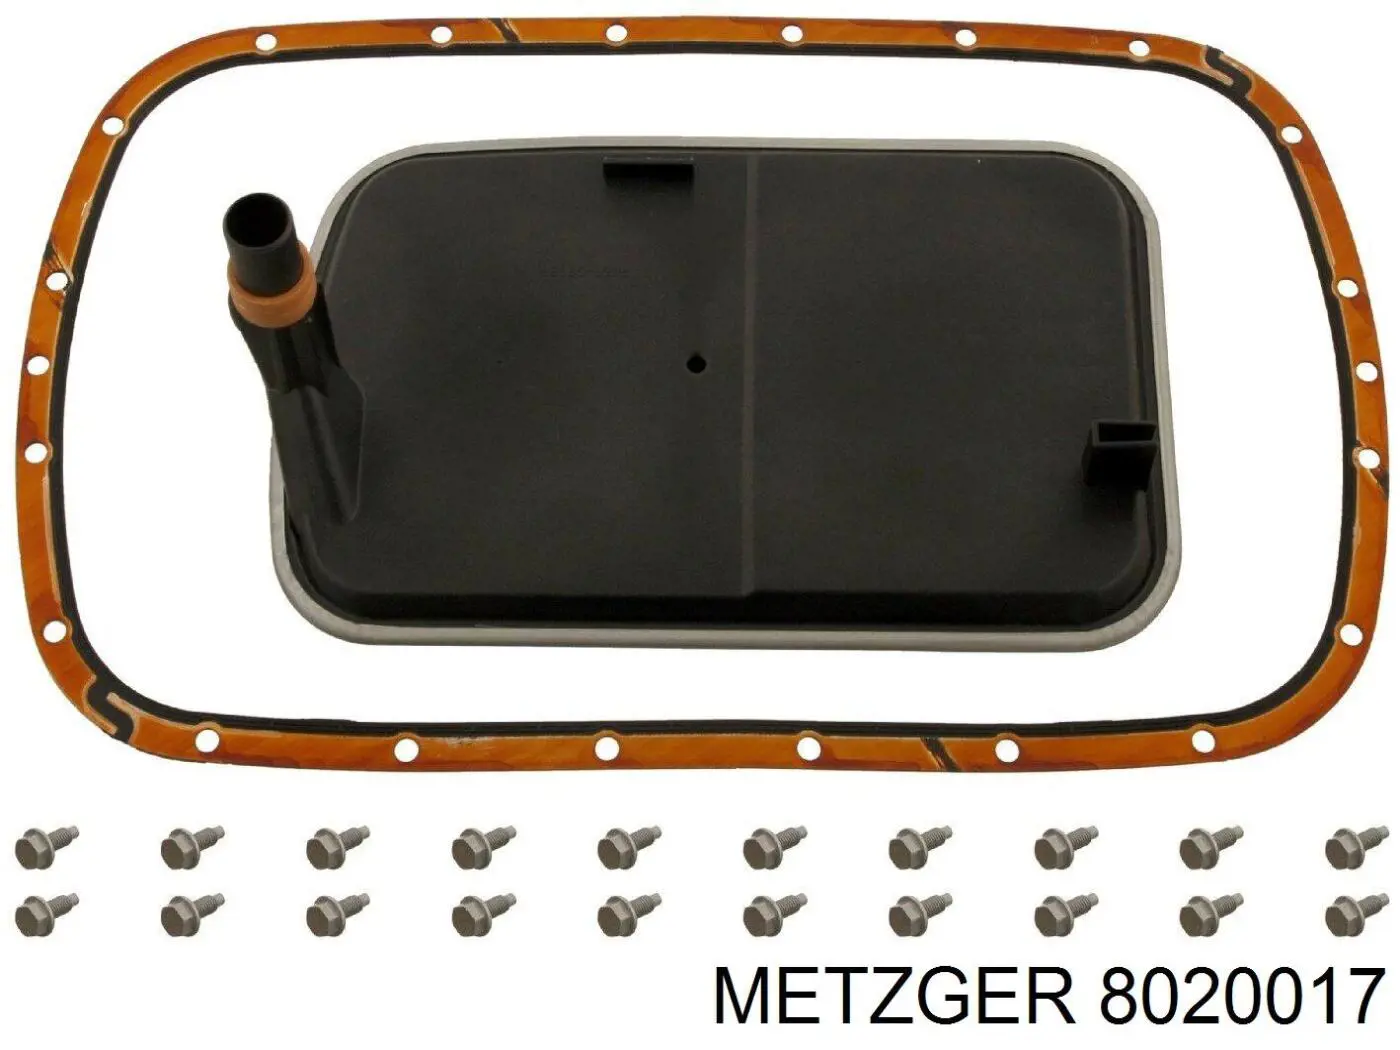 8020017 Metzger filtro de transmisión automática